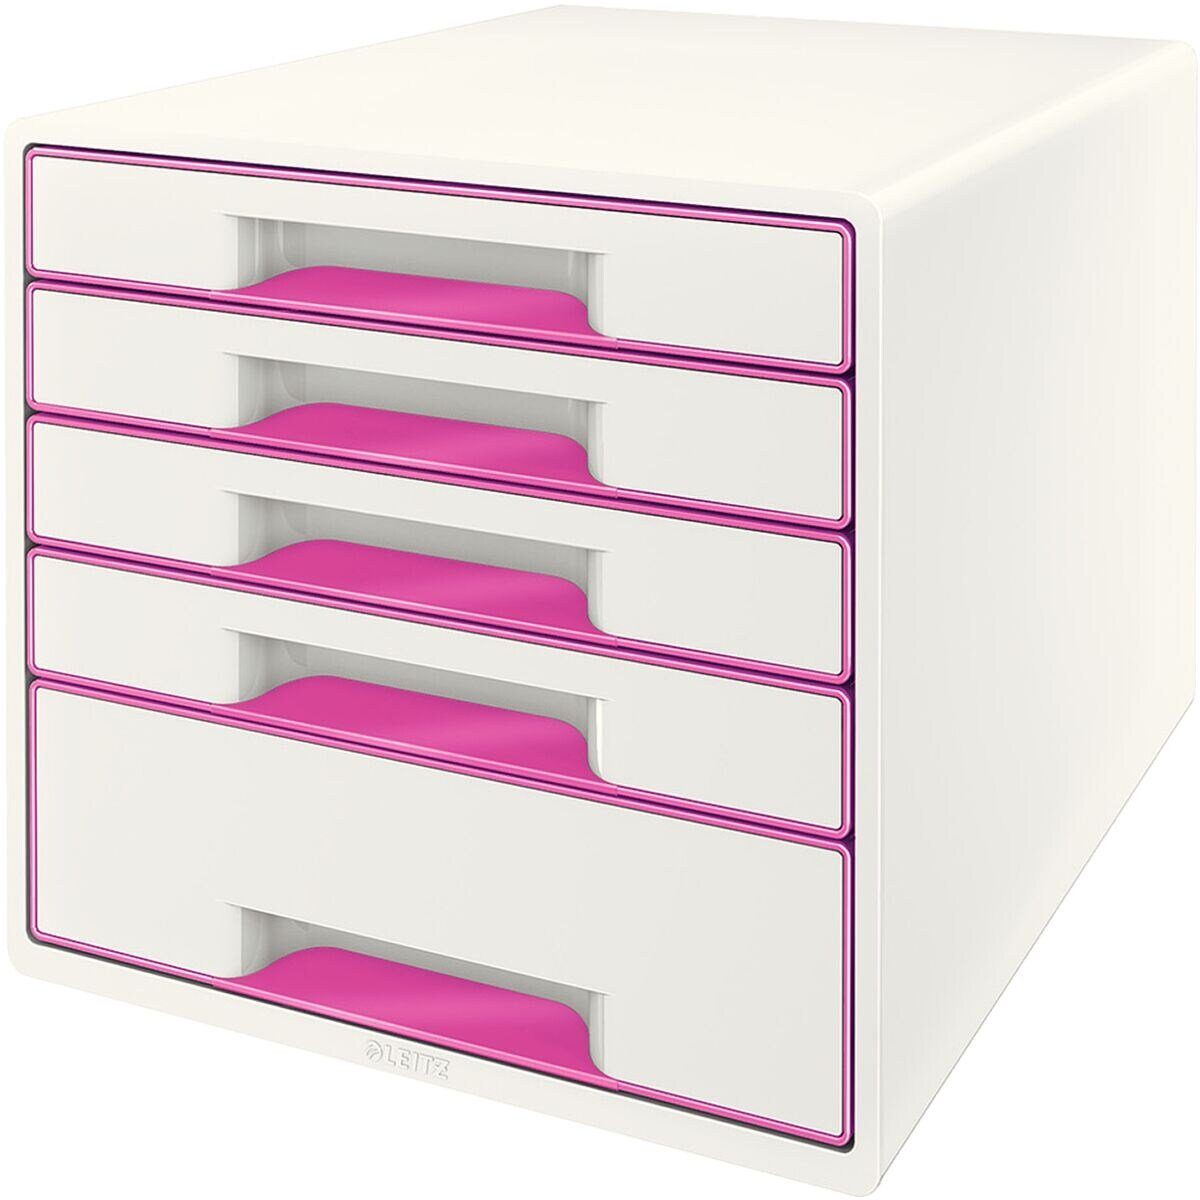 5214, Schubladenbox LEITZ stapelbar Cube WOW 5 geschlossen, Schubladen, pink metallic mit